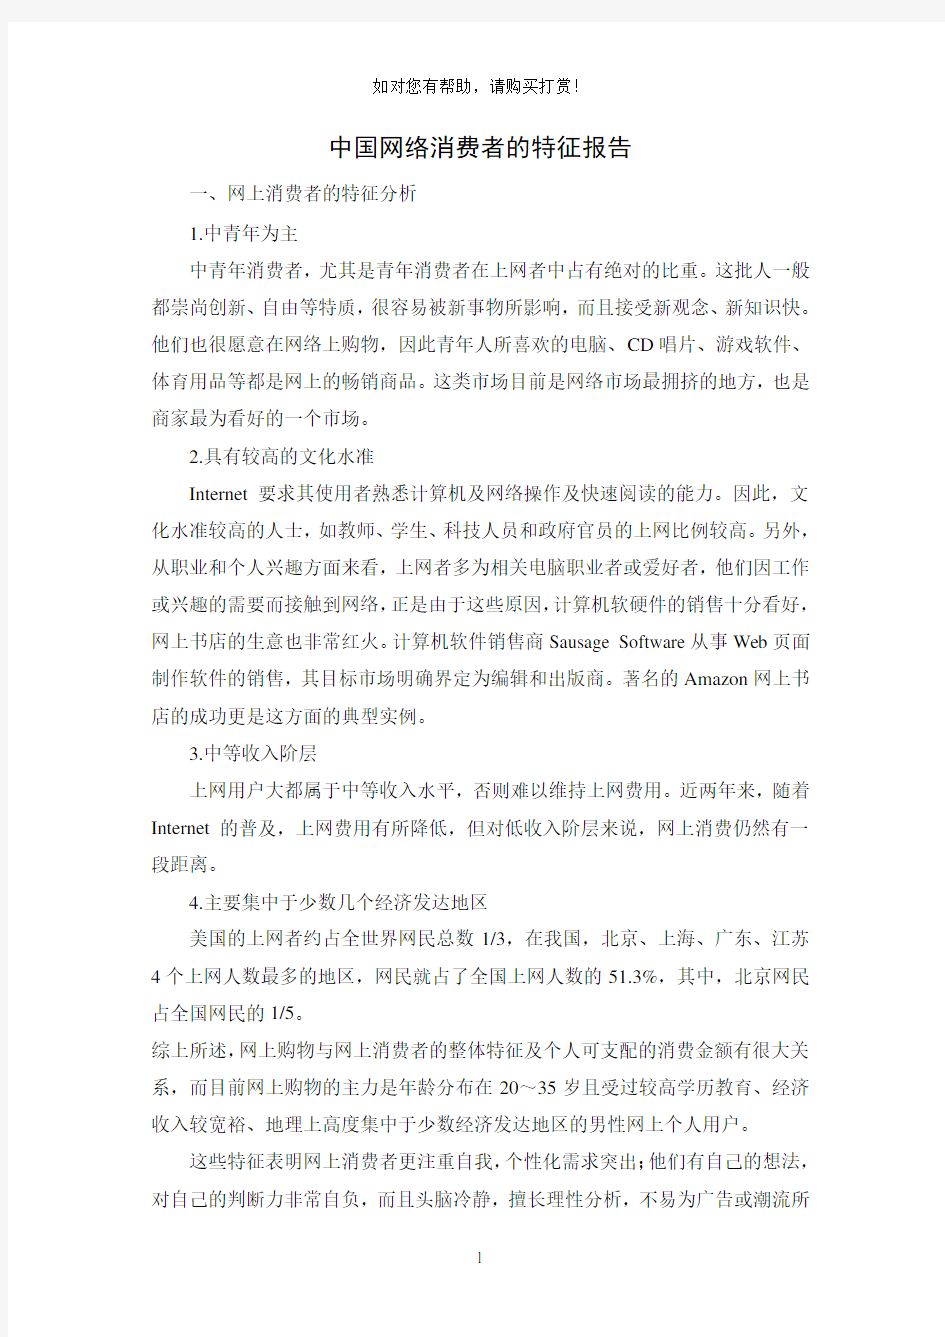 中国网络消费者的特征报告